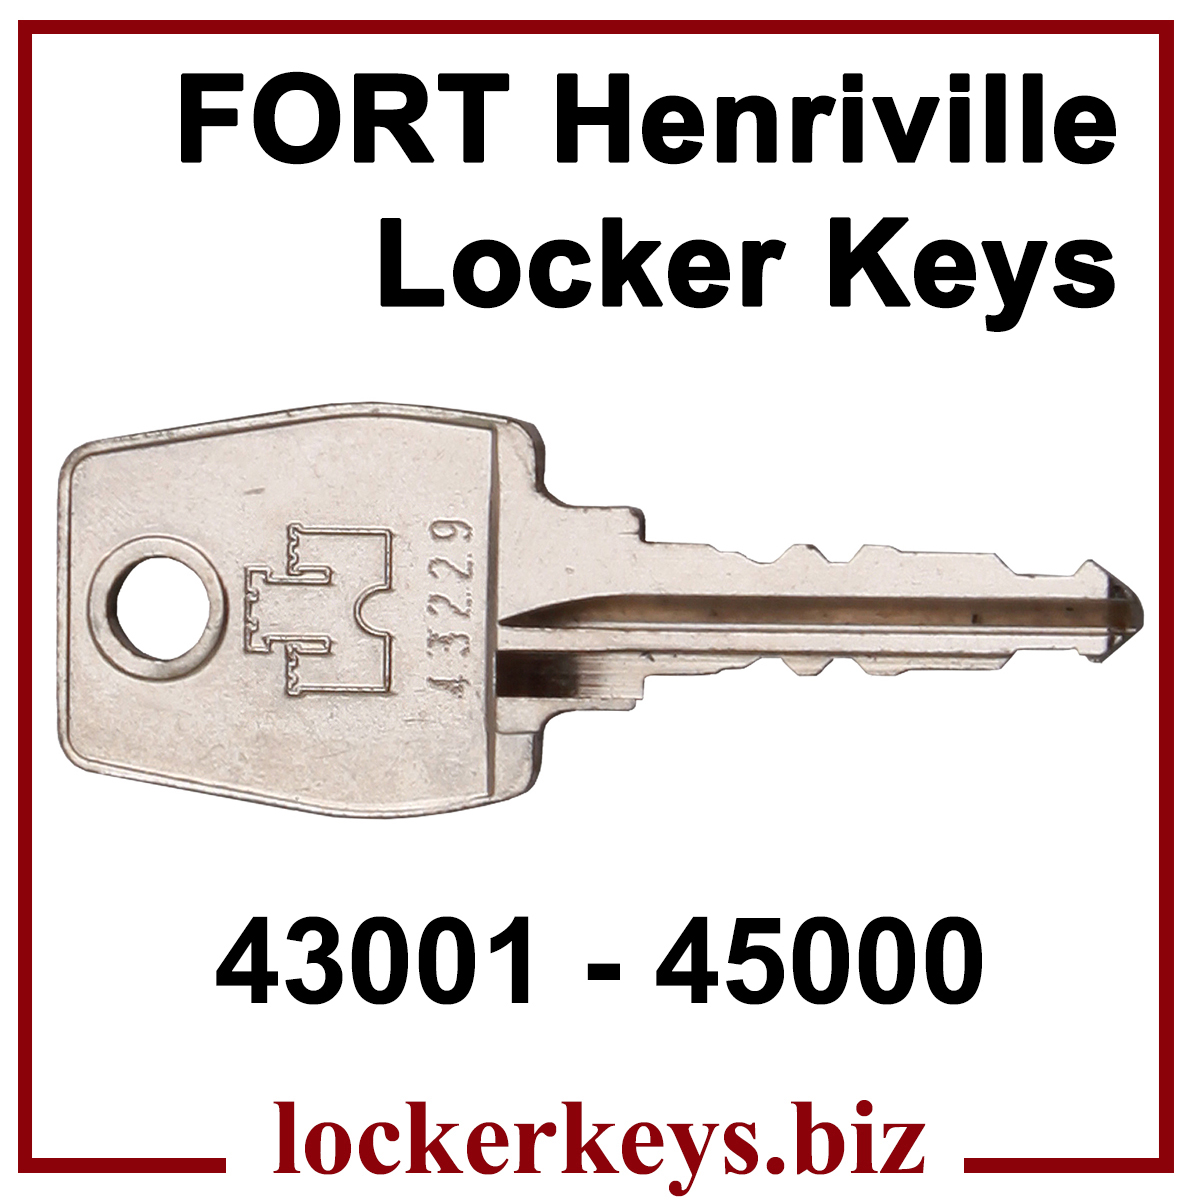 Fort Henriville Keys for Lockers 43001 - 45000